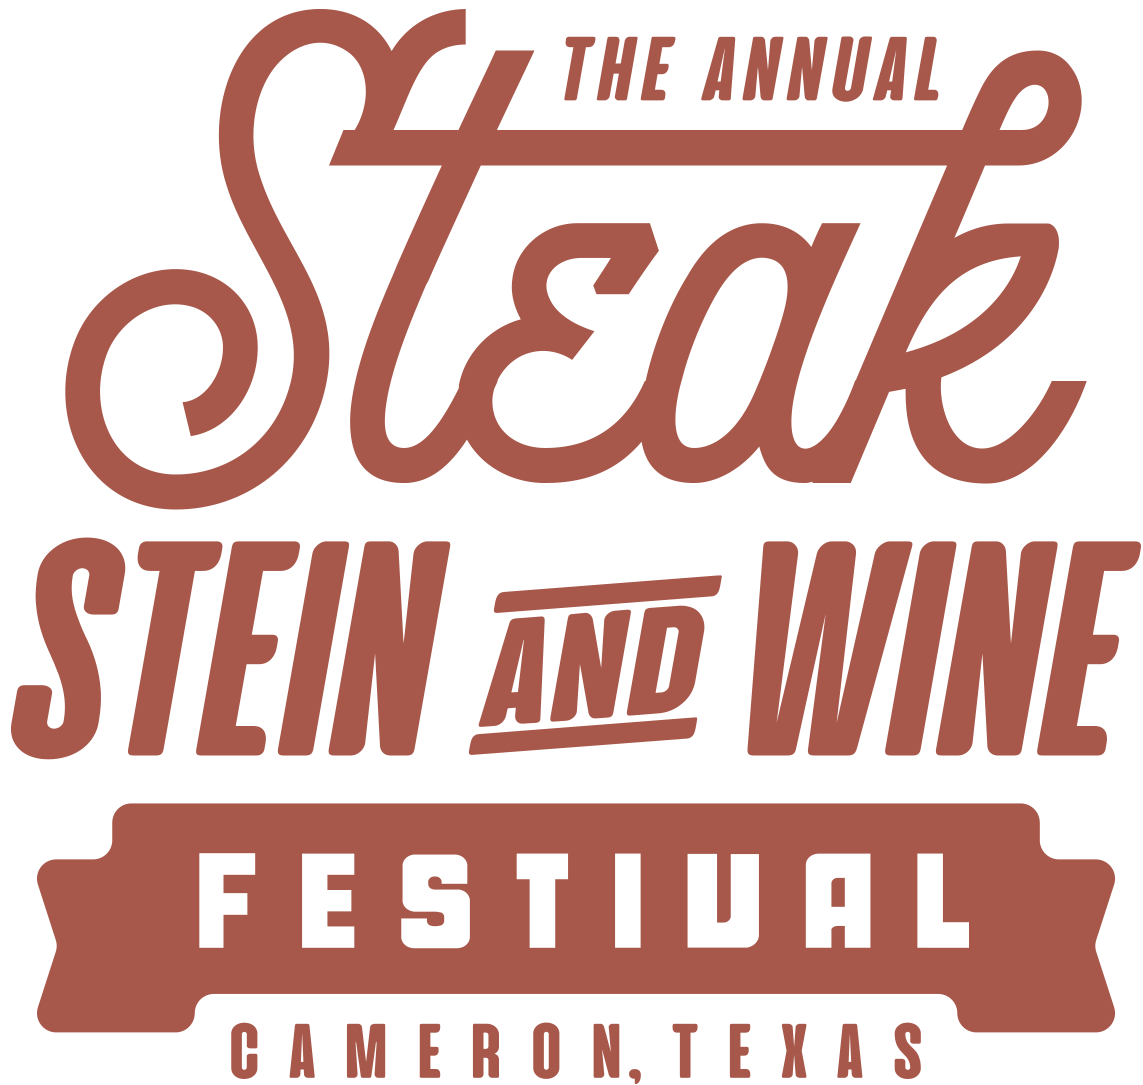 Steak, Stein, and Wine Fest